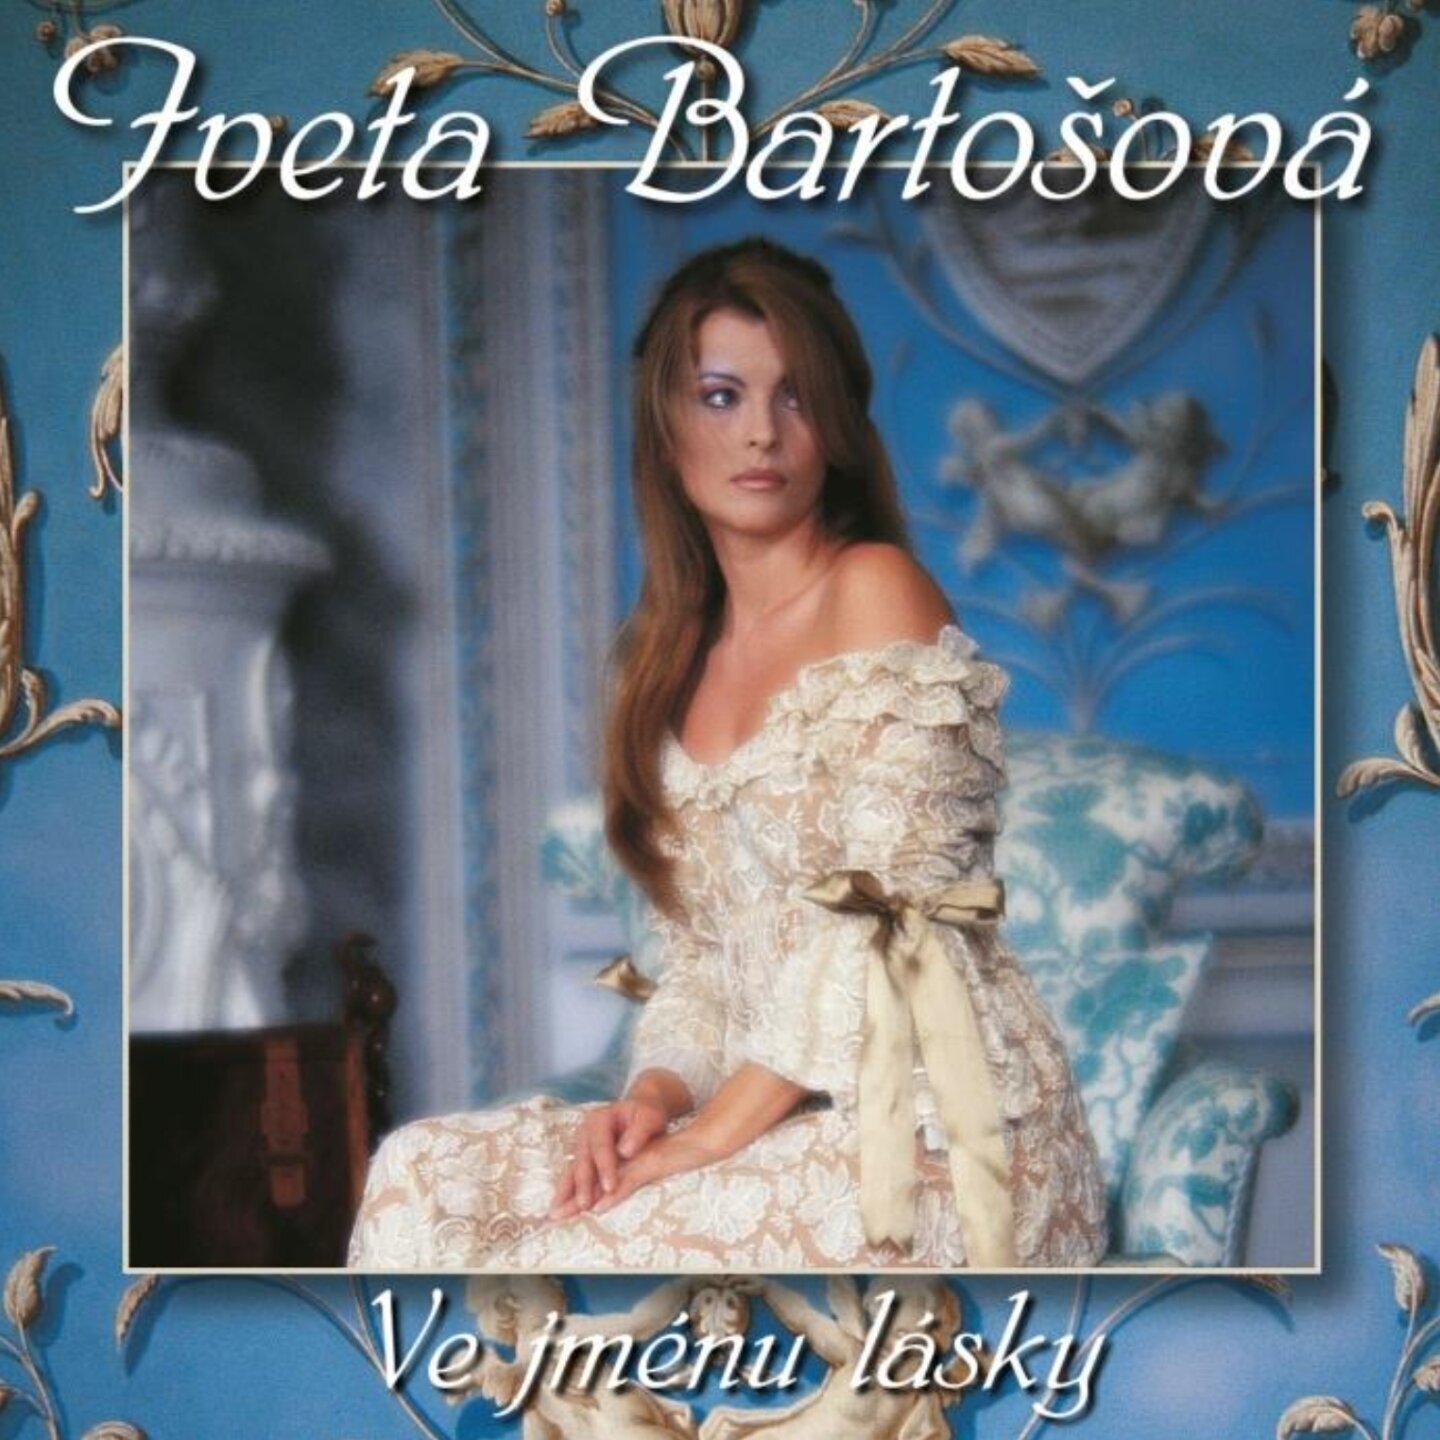 Glasbene CD Iveta Bartošová - Ve Jmenu Lasky (25Th Anniversary Edition) (CD)